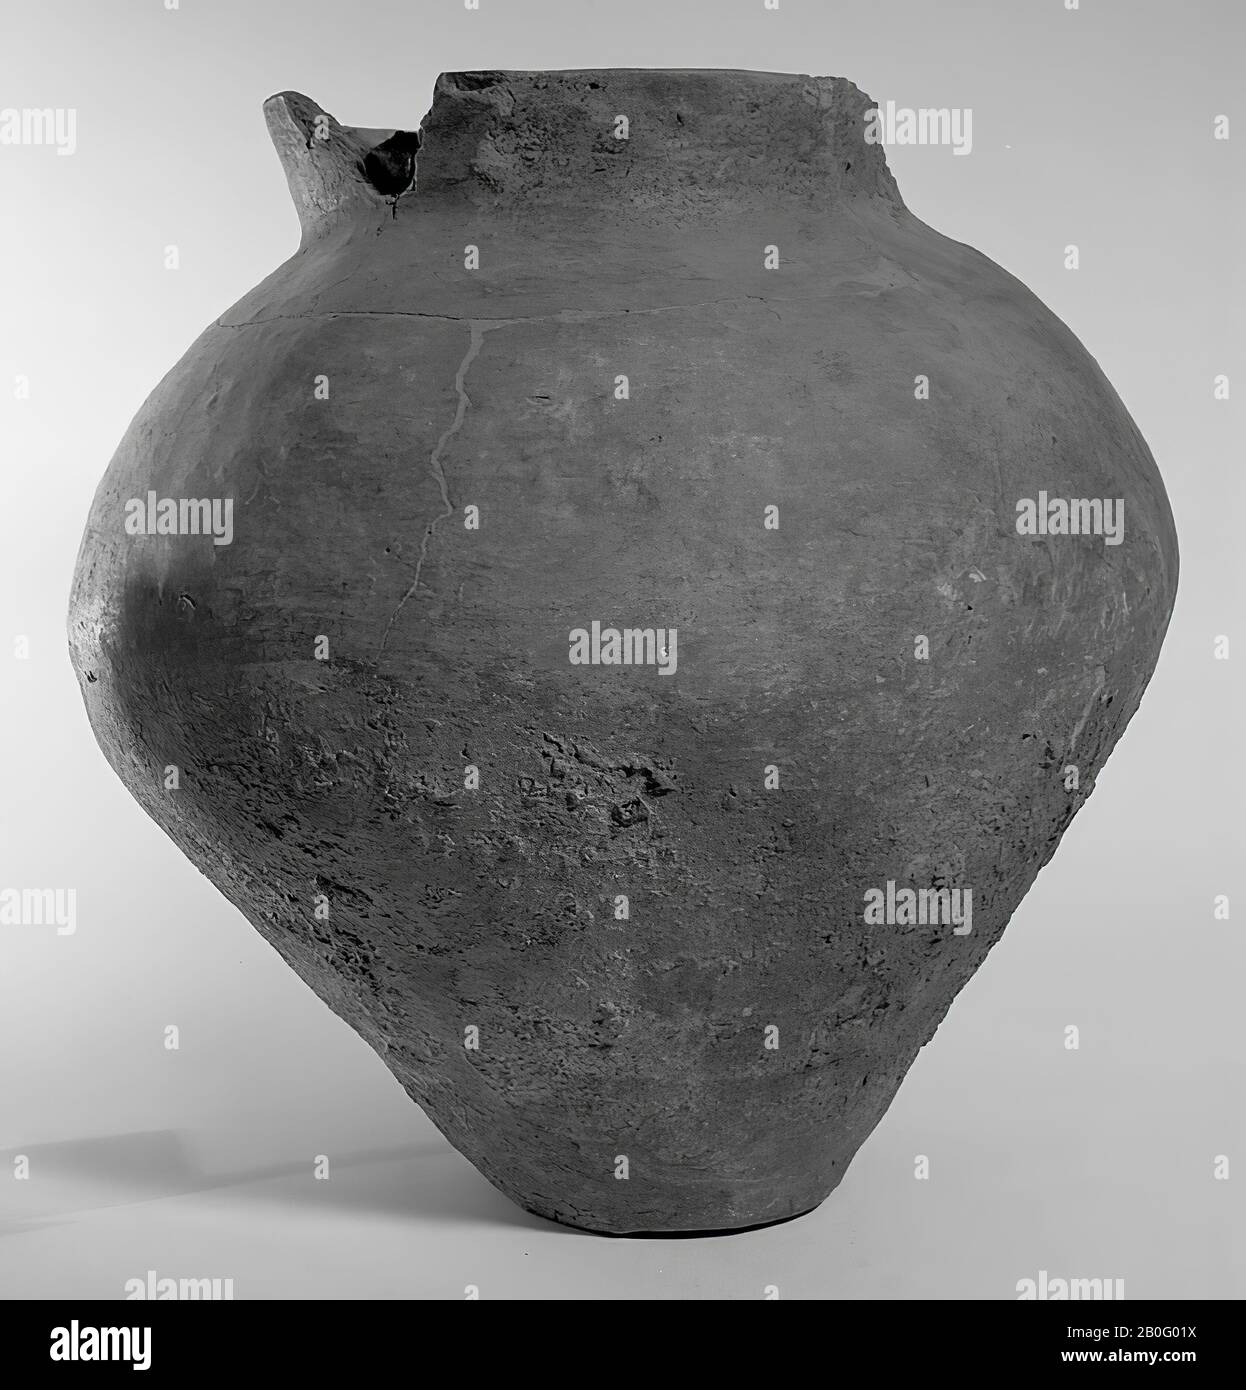 Urna di terracotta di più o meno Bataafs accadono. 2 fessure nel bordo, crepe, specialmente intorno al collo. Contiene residui cremati, Urn, terracotta, h: 32 cm, diam: 31 cm, preistoria -800 Foto Stock